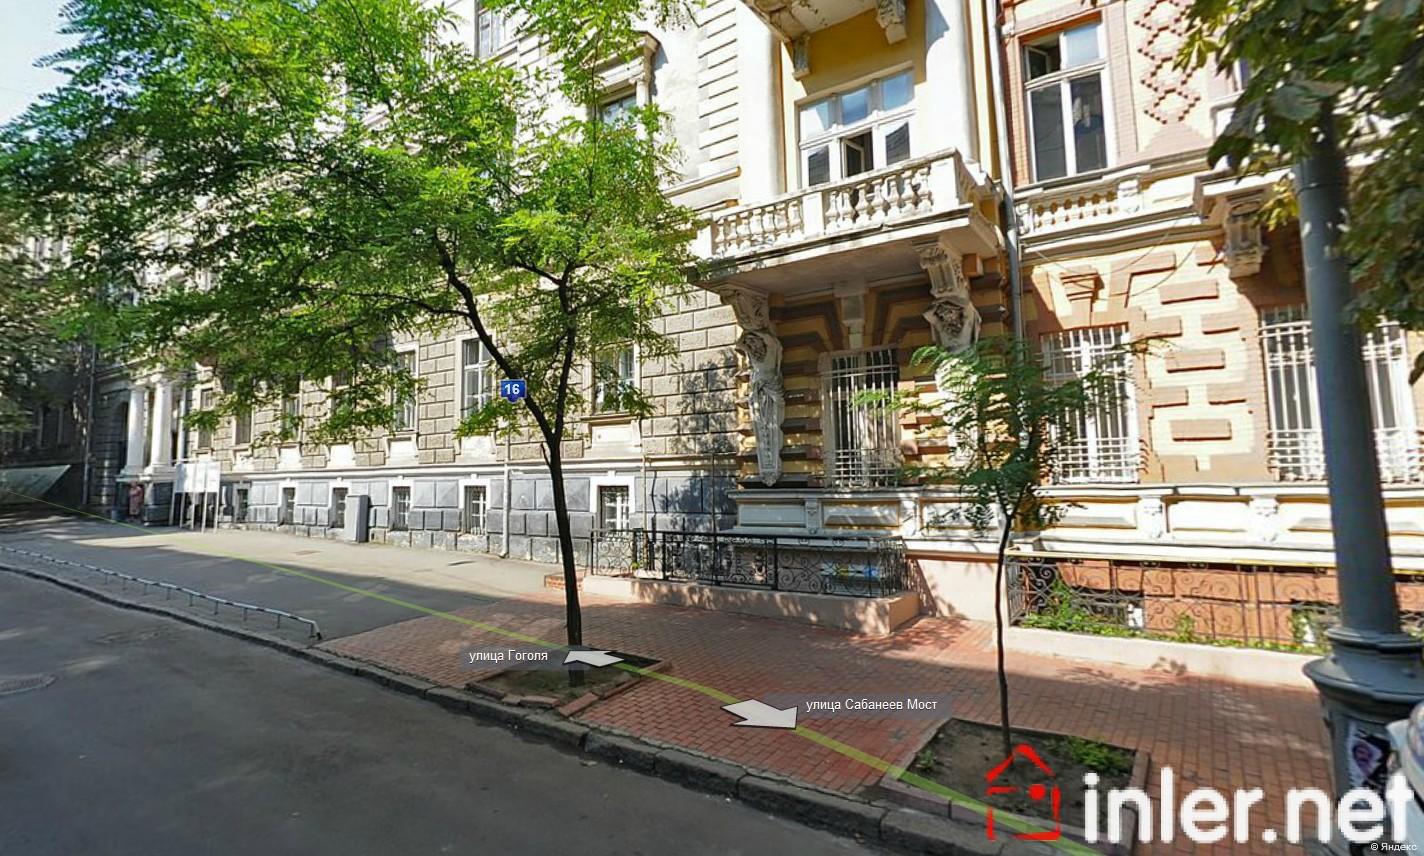 Помещение под кафе в центре города на Гоголя, 180 кв.м. 3 окна и вход ID 6887 (Фото 1)